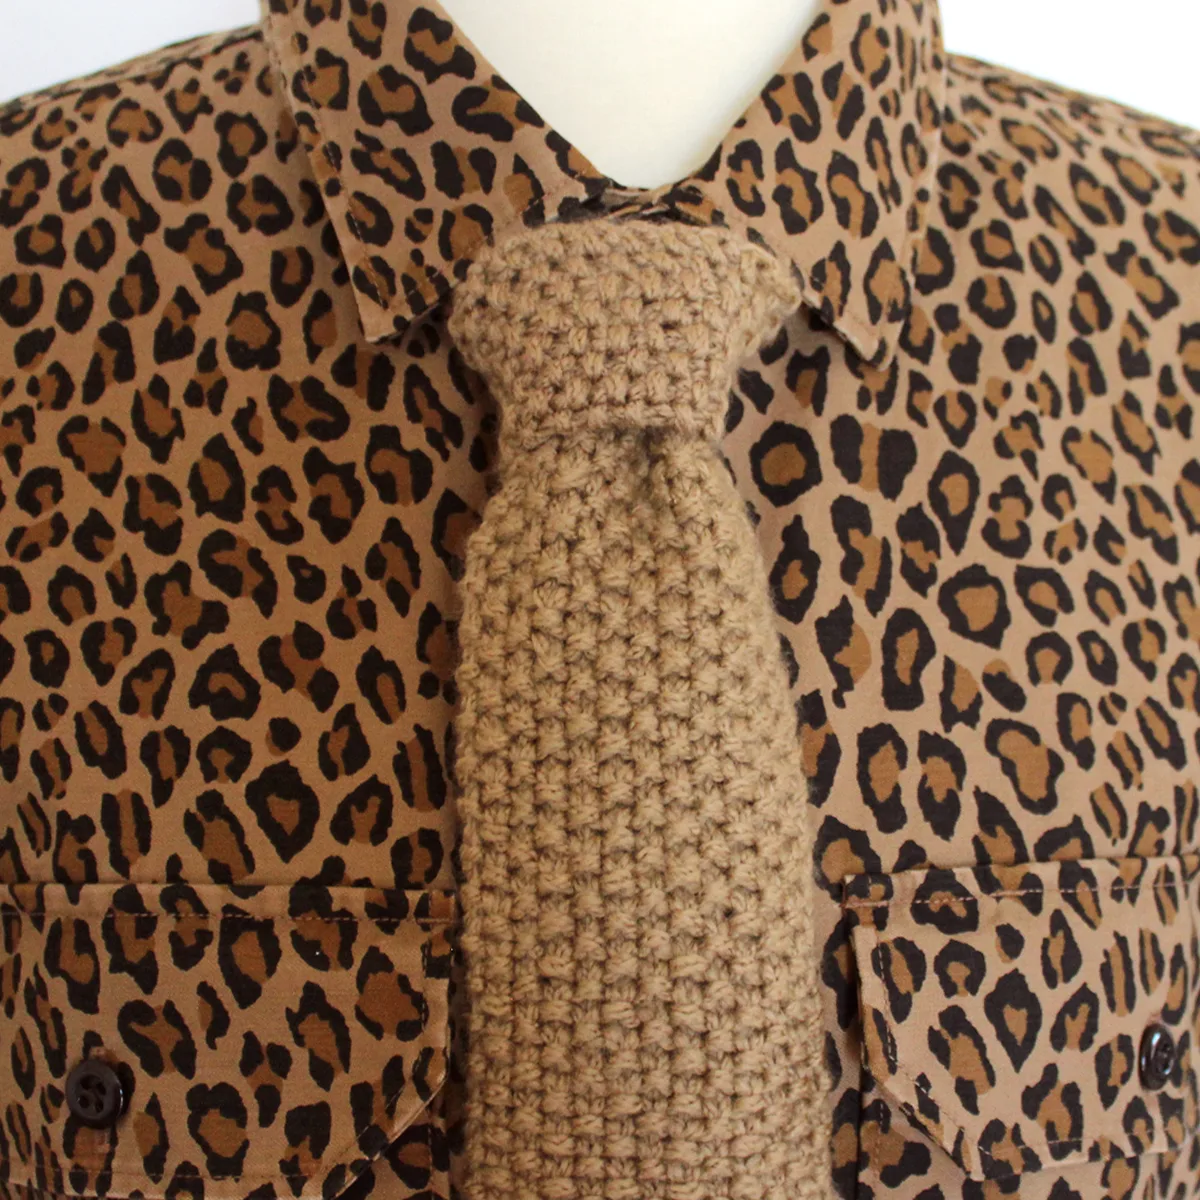 Seed stitch knitted necktie worn on men's leopard print button-down shirt.